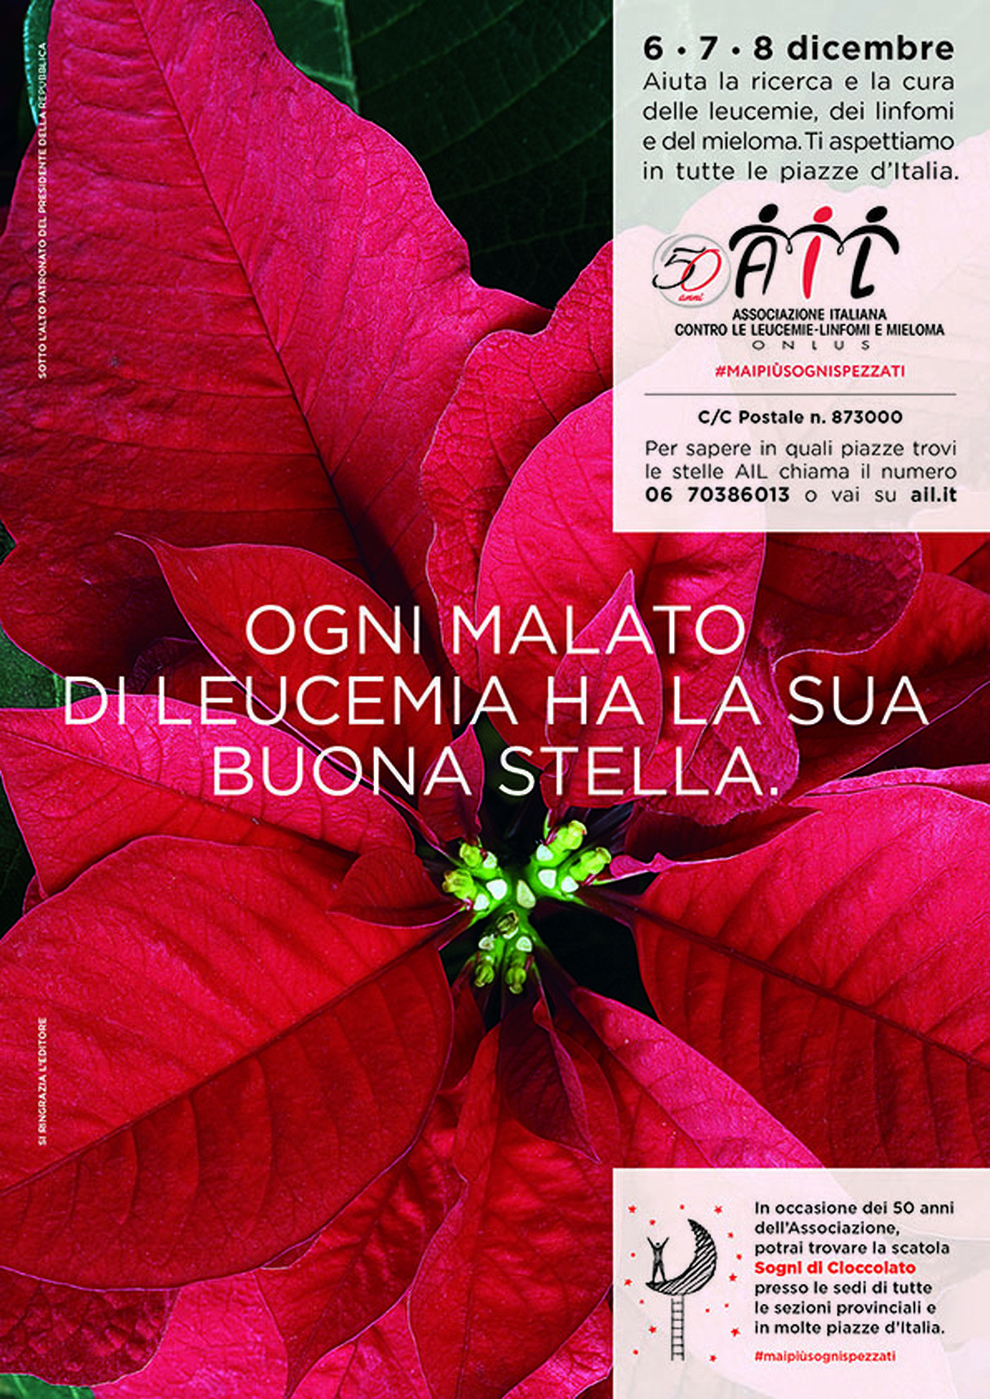 Curare Una Stella Di Natale.Stelle Di Natale Ail Torna Il Tradizionale Appuntamento In 4 800 Piazze Italiane 6 7 8 Dicembre